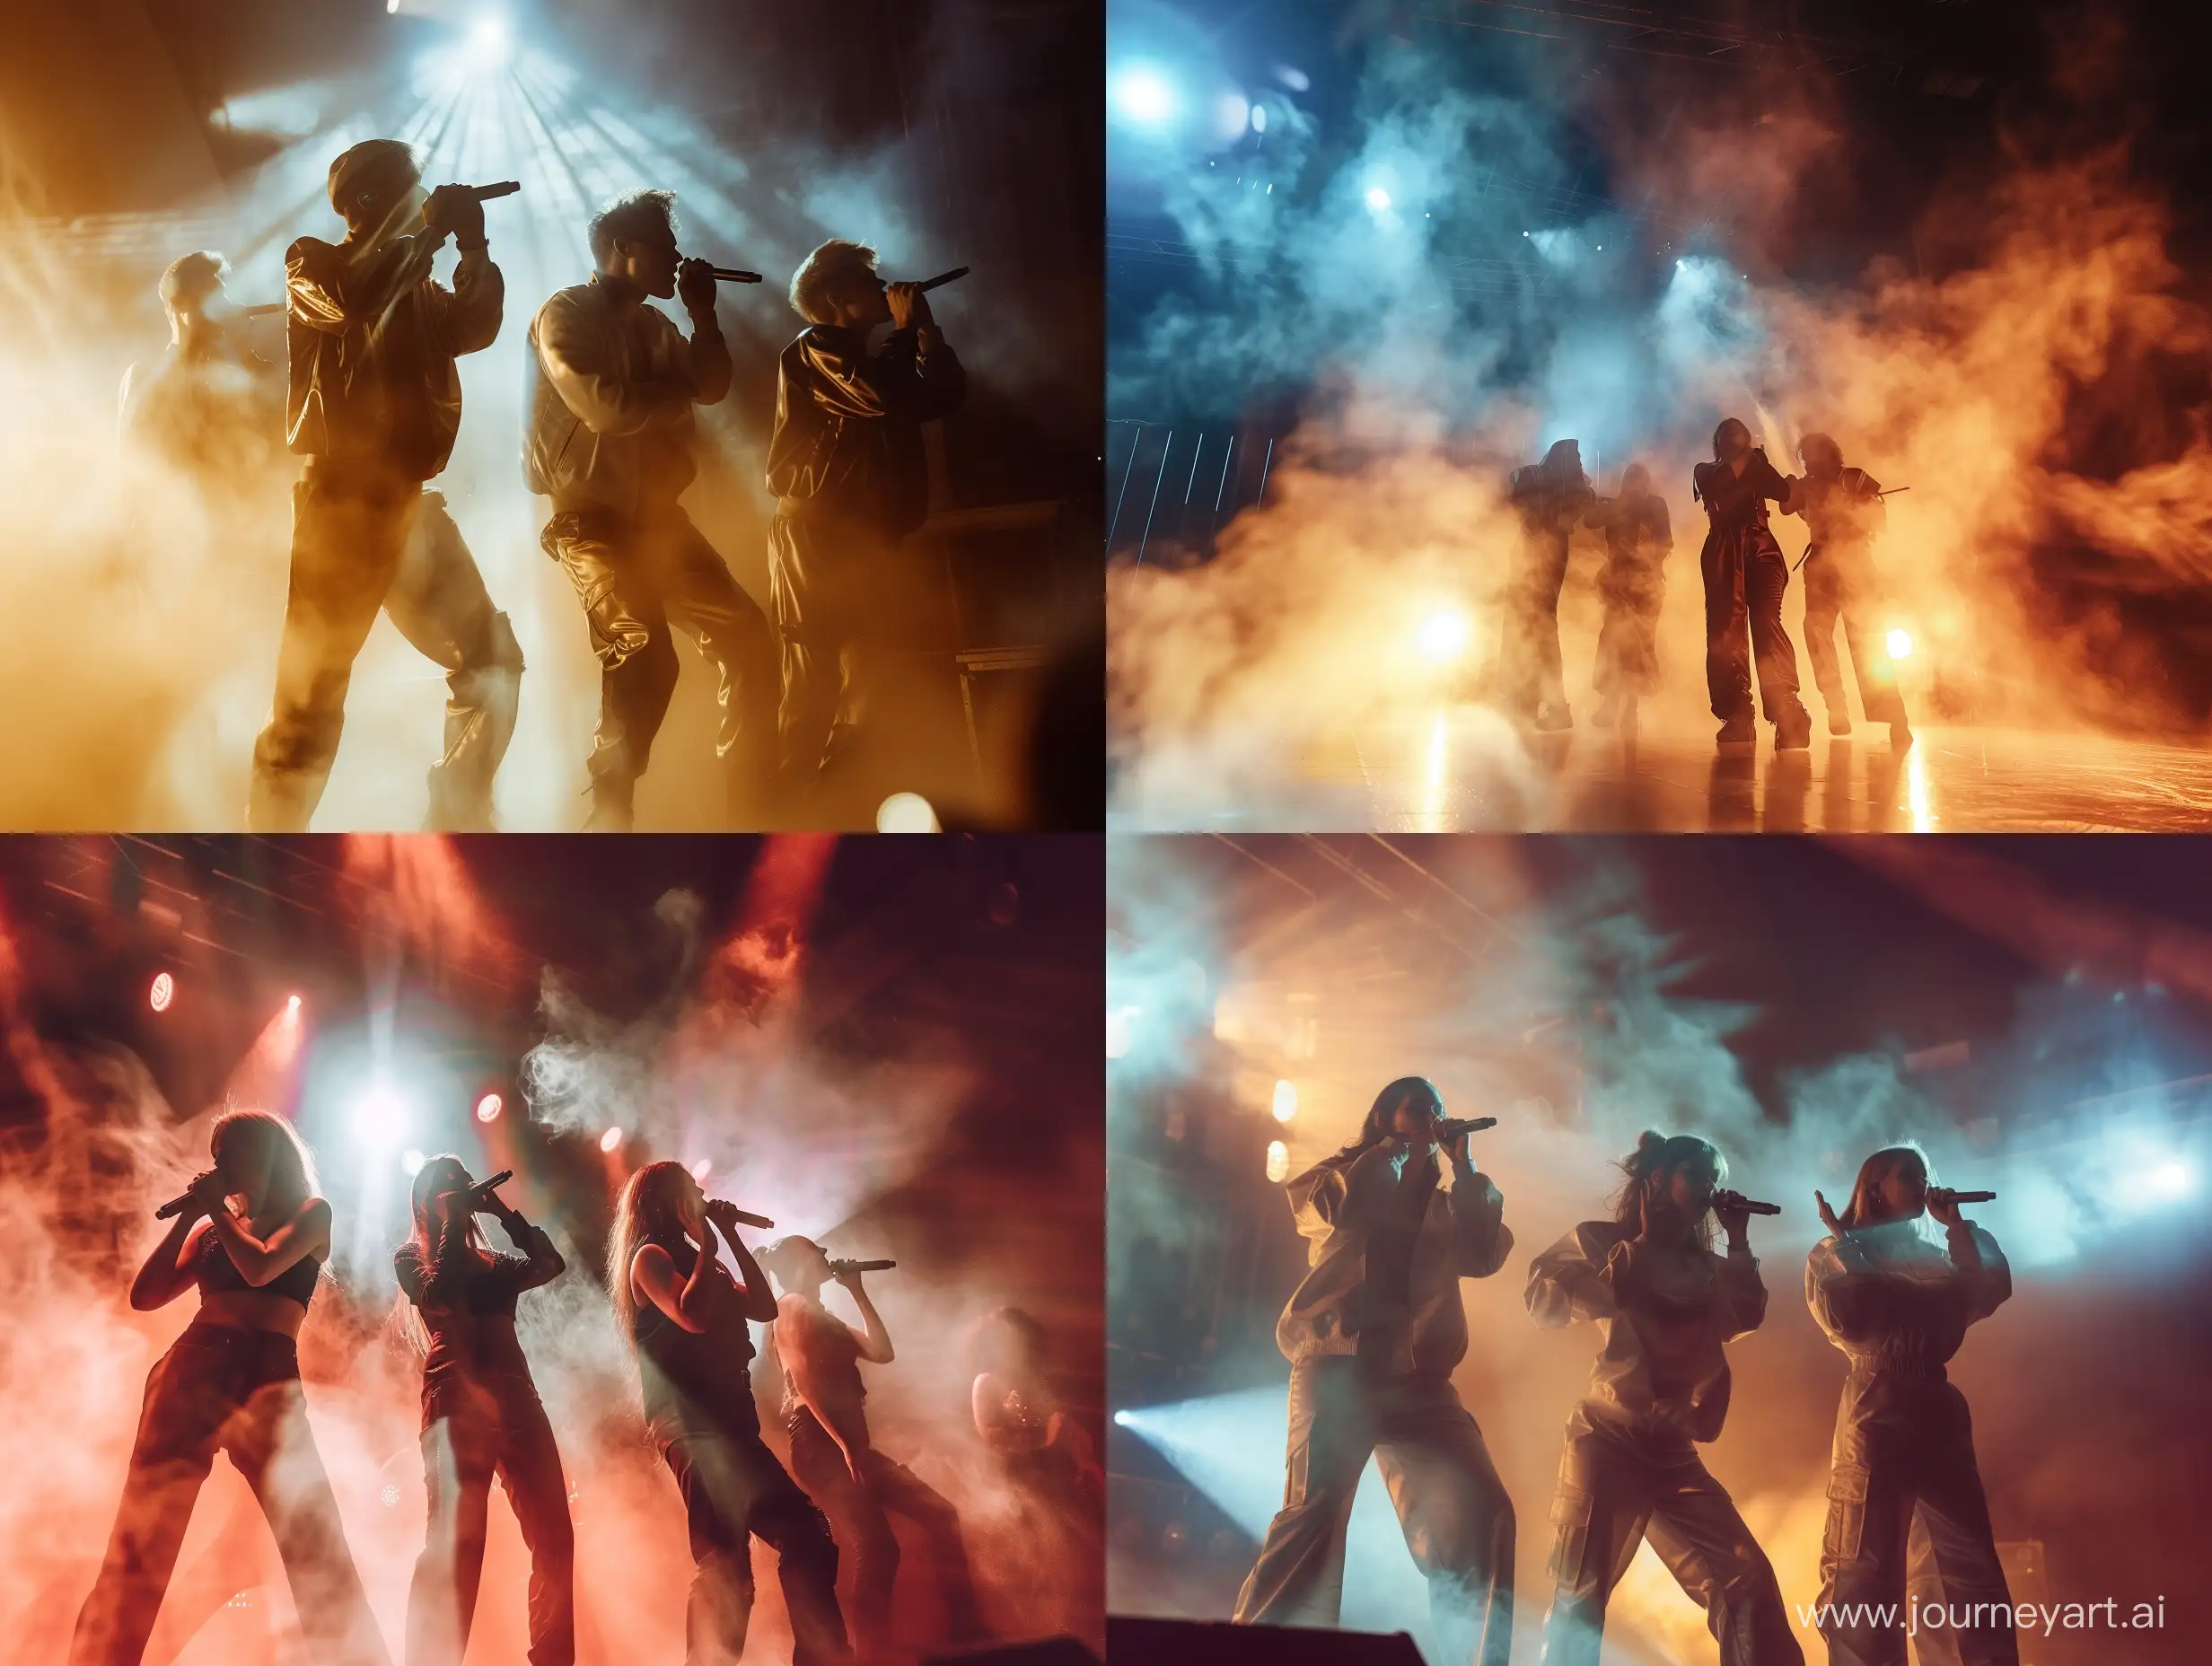 Певицы российской музыкальной группы "Серебро" на сцене, свет, дым, фотореализм, детали